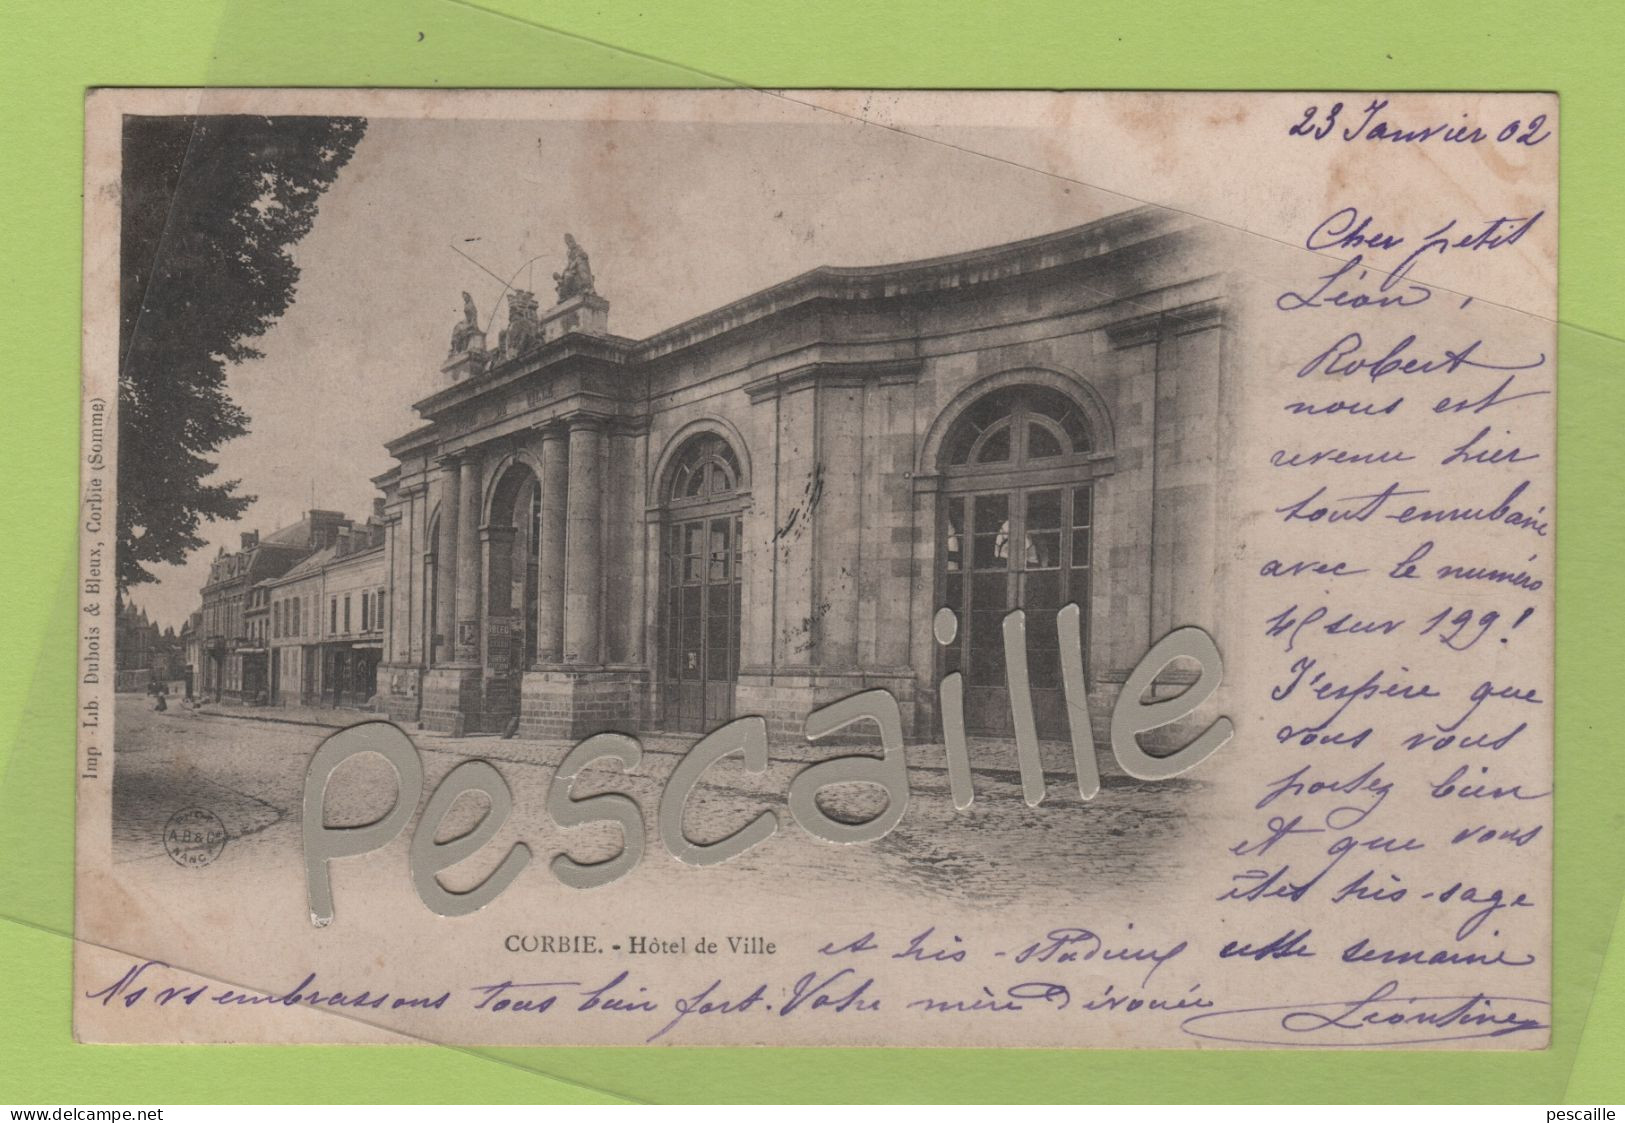 80 SOMME - CP CORBIE - HOTEL DE VILLE - IMP. LIB. DUBOIS & BLEUX - CIRCULEE EN 1902 - Corbie